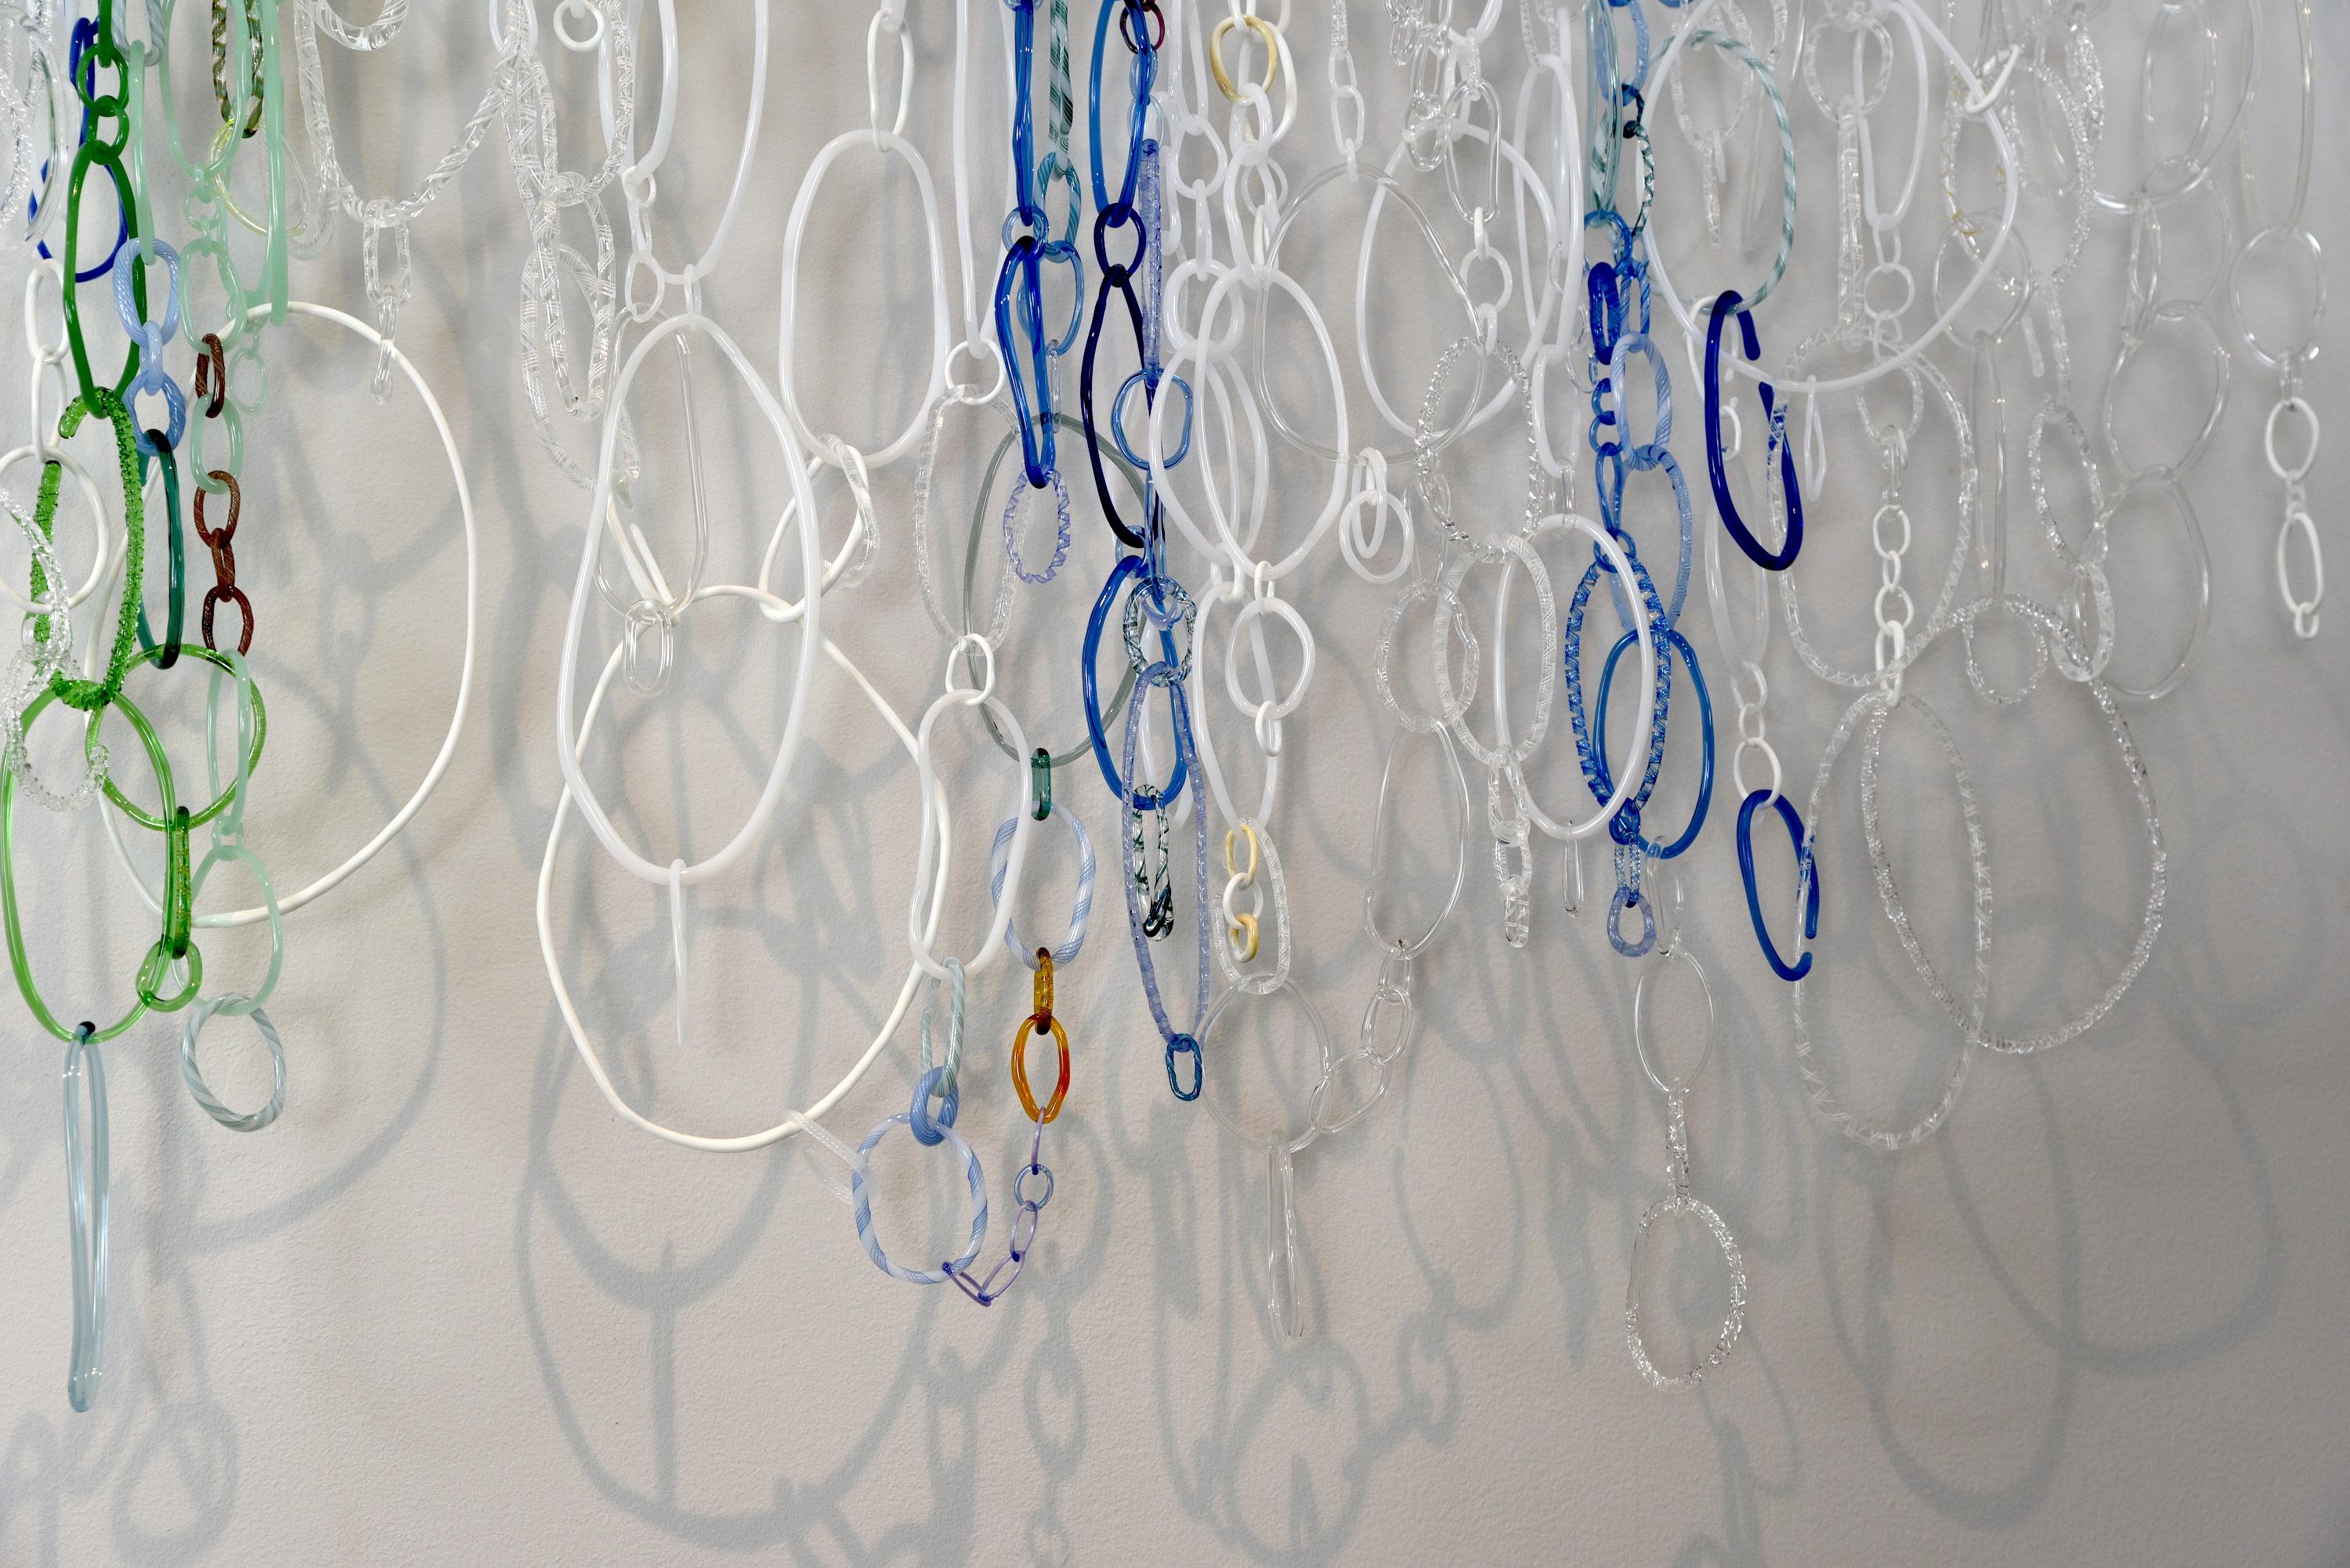 Diese hängende Skulptur von David Licata besteht aus frei geformten kreisförmigen und ovalen Schleifen aus fackelgeschmiedetem Borosilikatglas in den Farben Weiß, Klar, Grün, Kobalt und Veilchenblau. Die Loops in verschiedenen Größen und Texturen